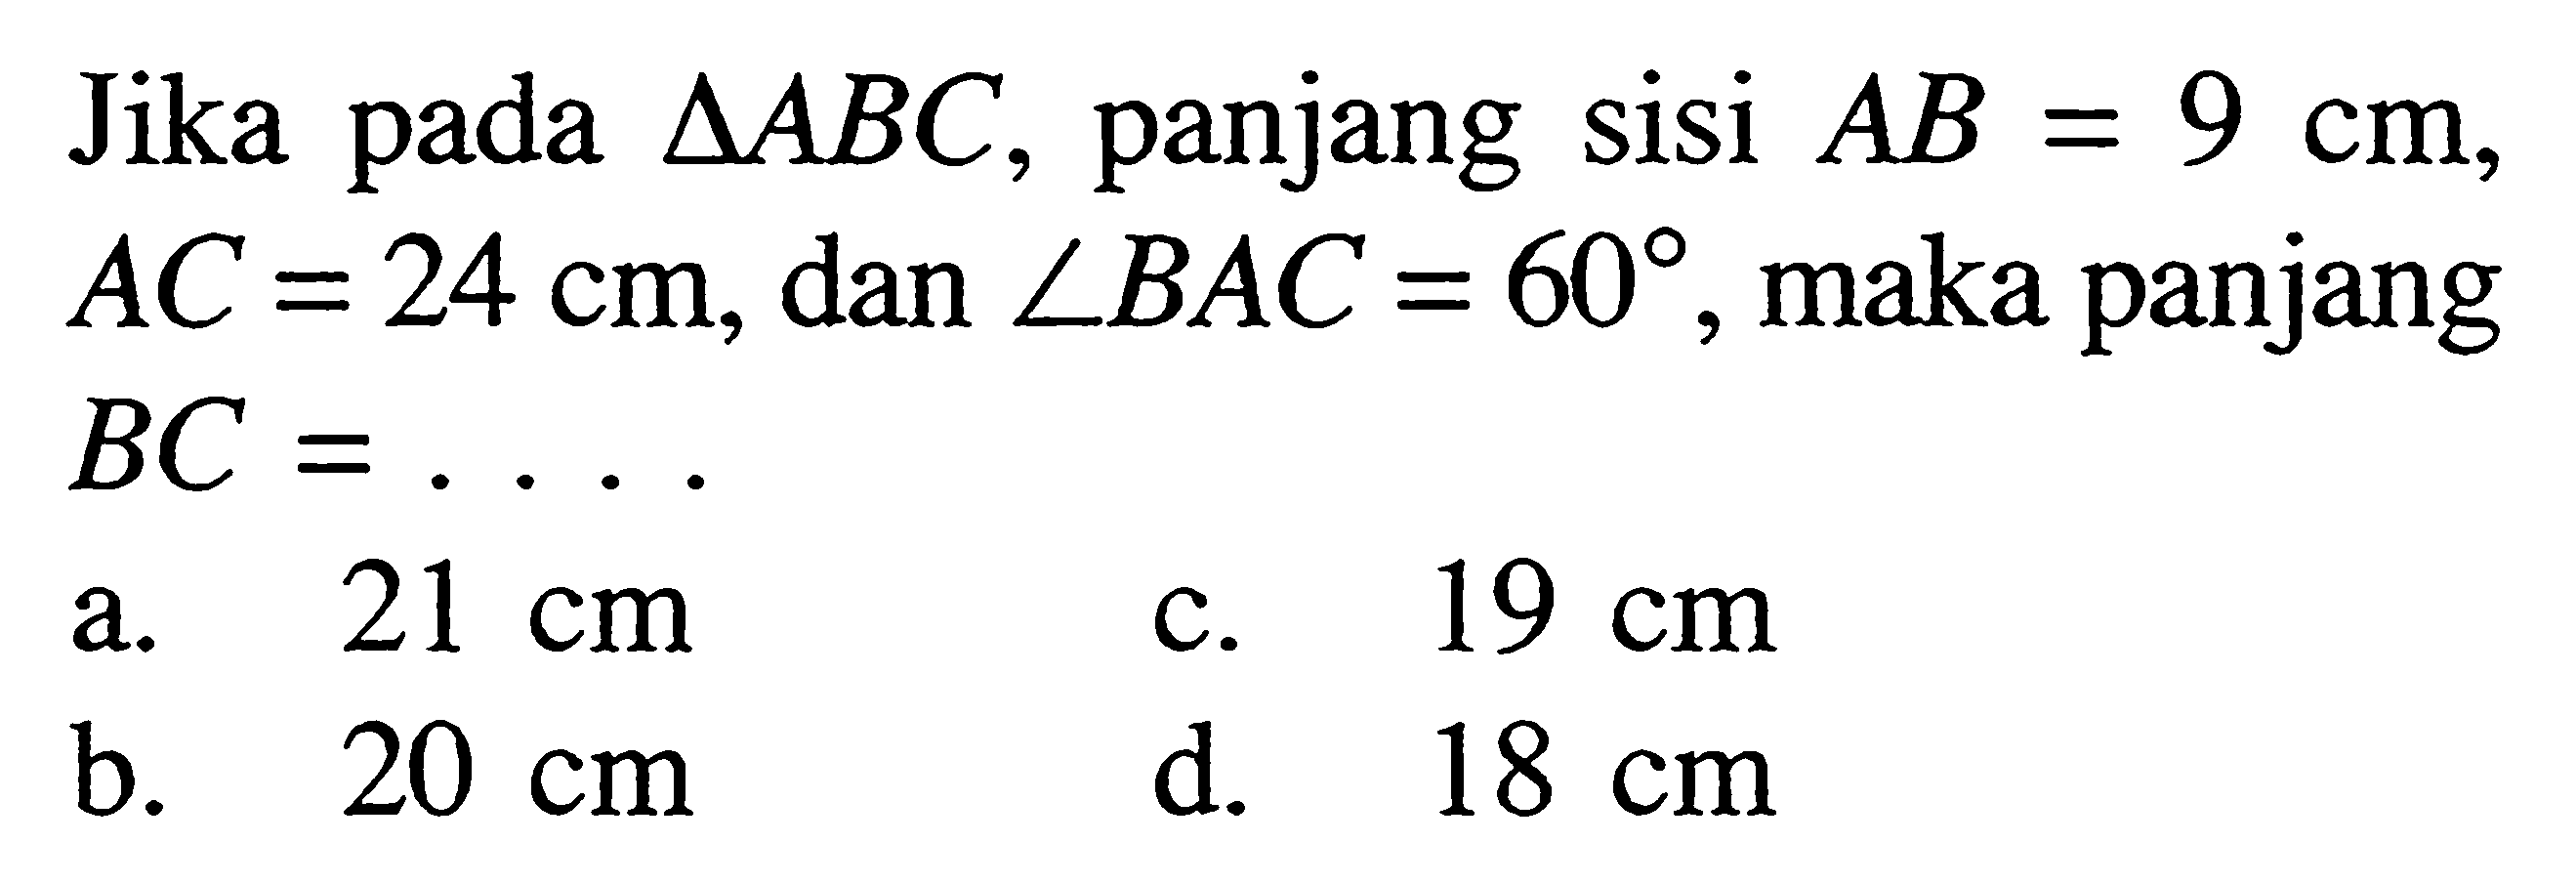 Jika pada segitiga ABC, panjang sisi AB=9 cm,AC=24 cm, dan sudut BAC=60, maka panjangBC= ....